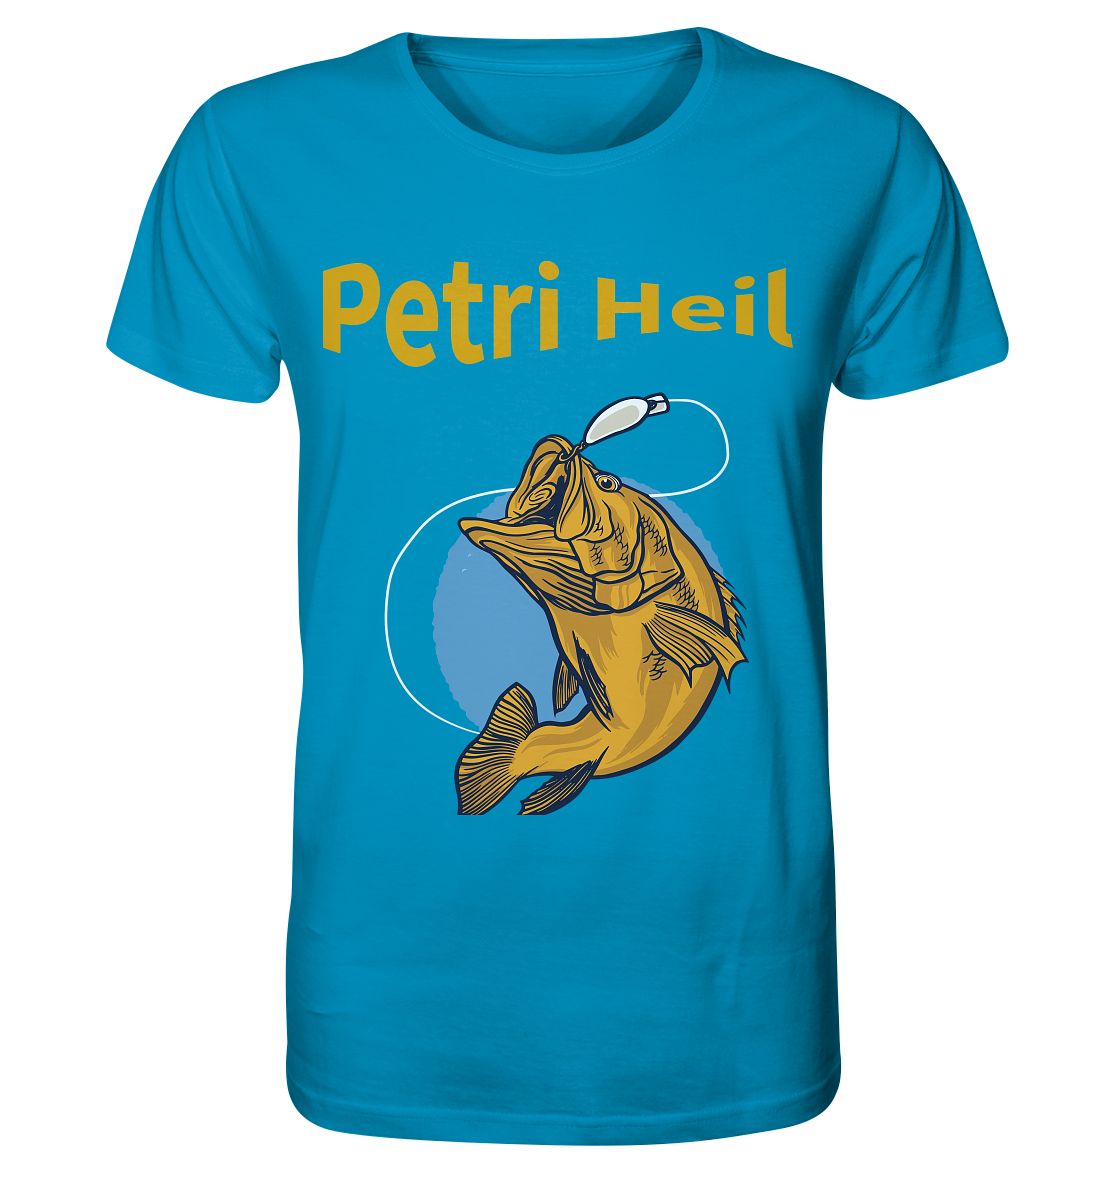 Petri-Heil - Organic Shirt - Online Kaufhaus München